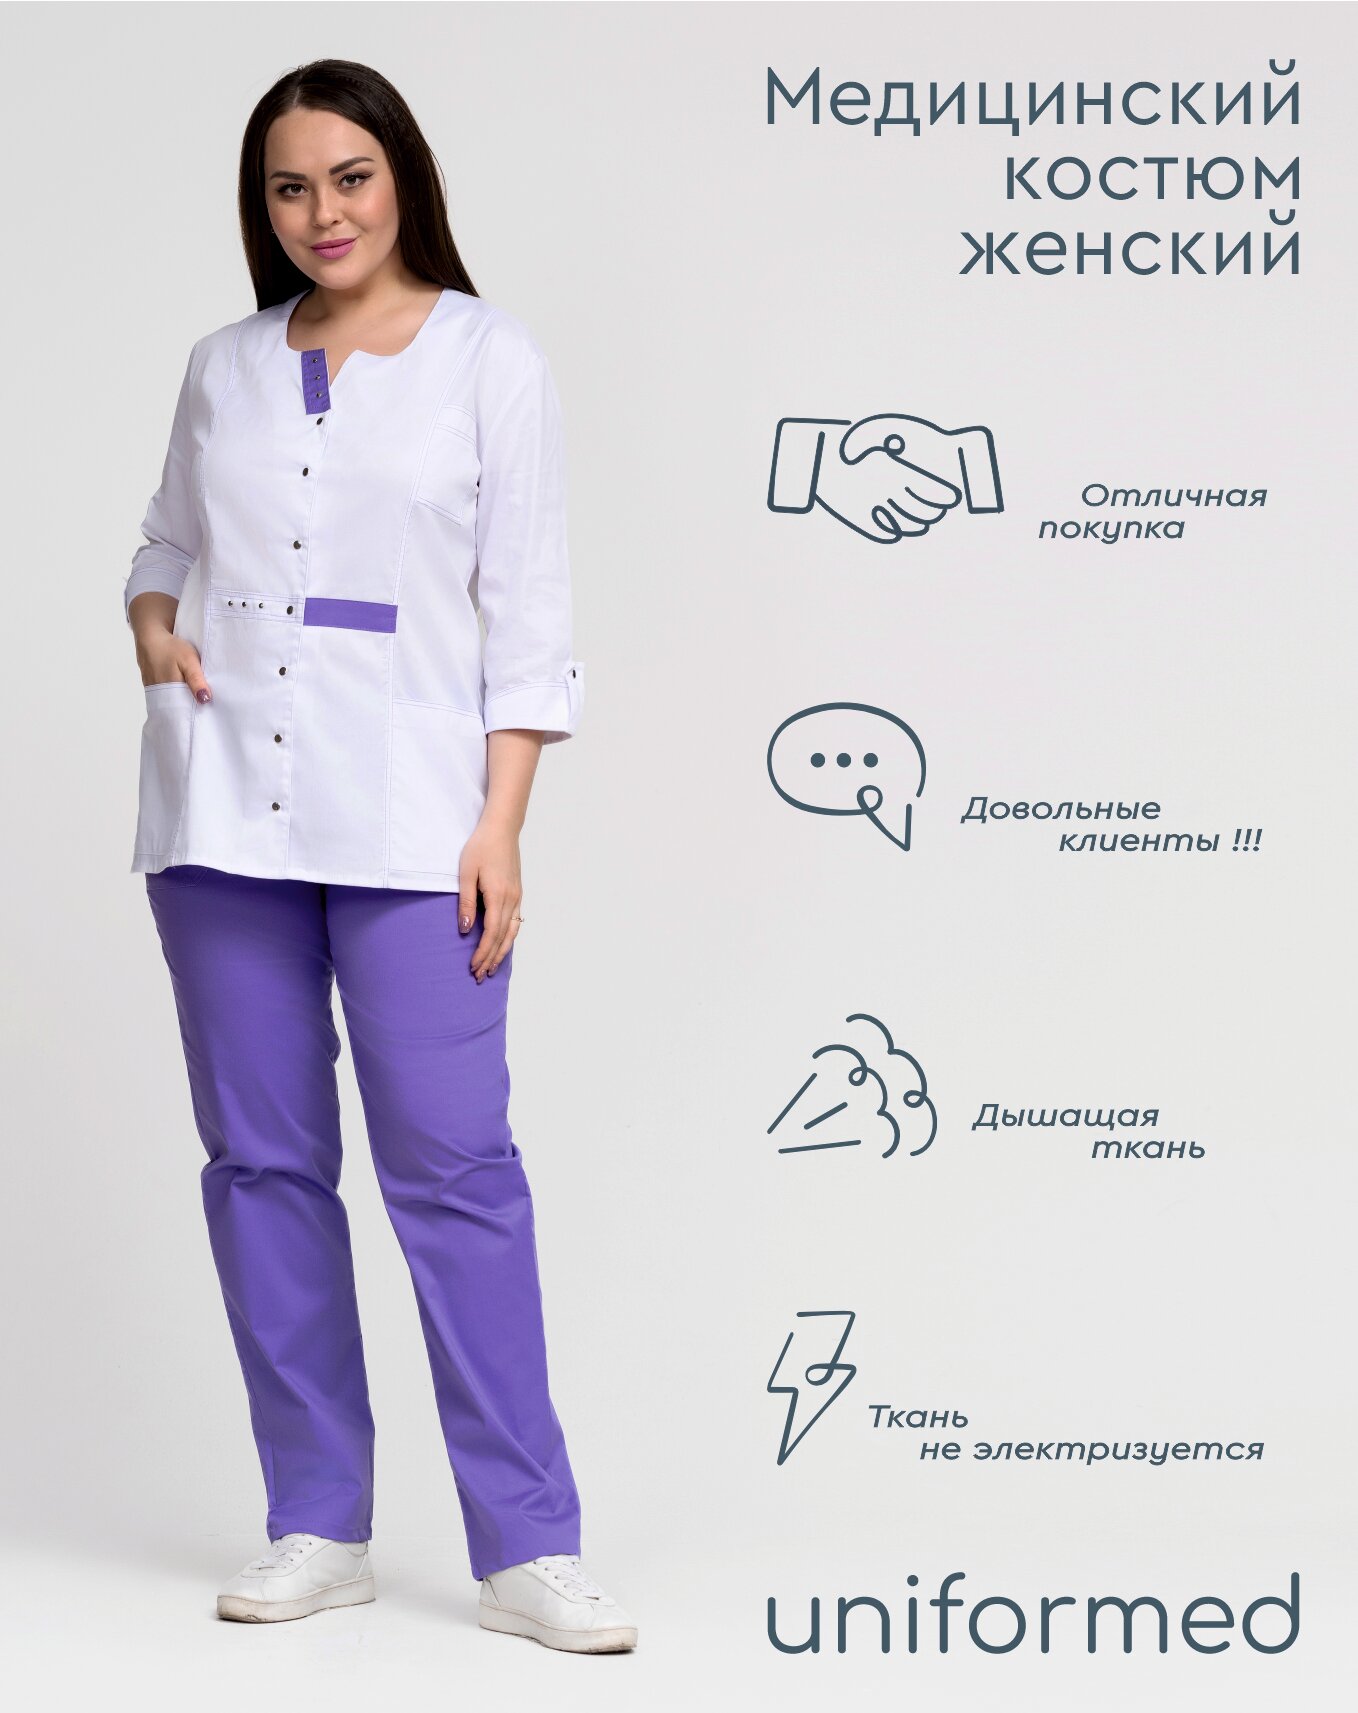 Медицинский женский костюм 352.4.2 Uniformed ткань сатори стрейч рукав 3/4 на кнопках цвет белый рост 170-176 размер 58